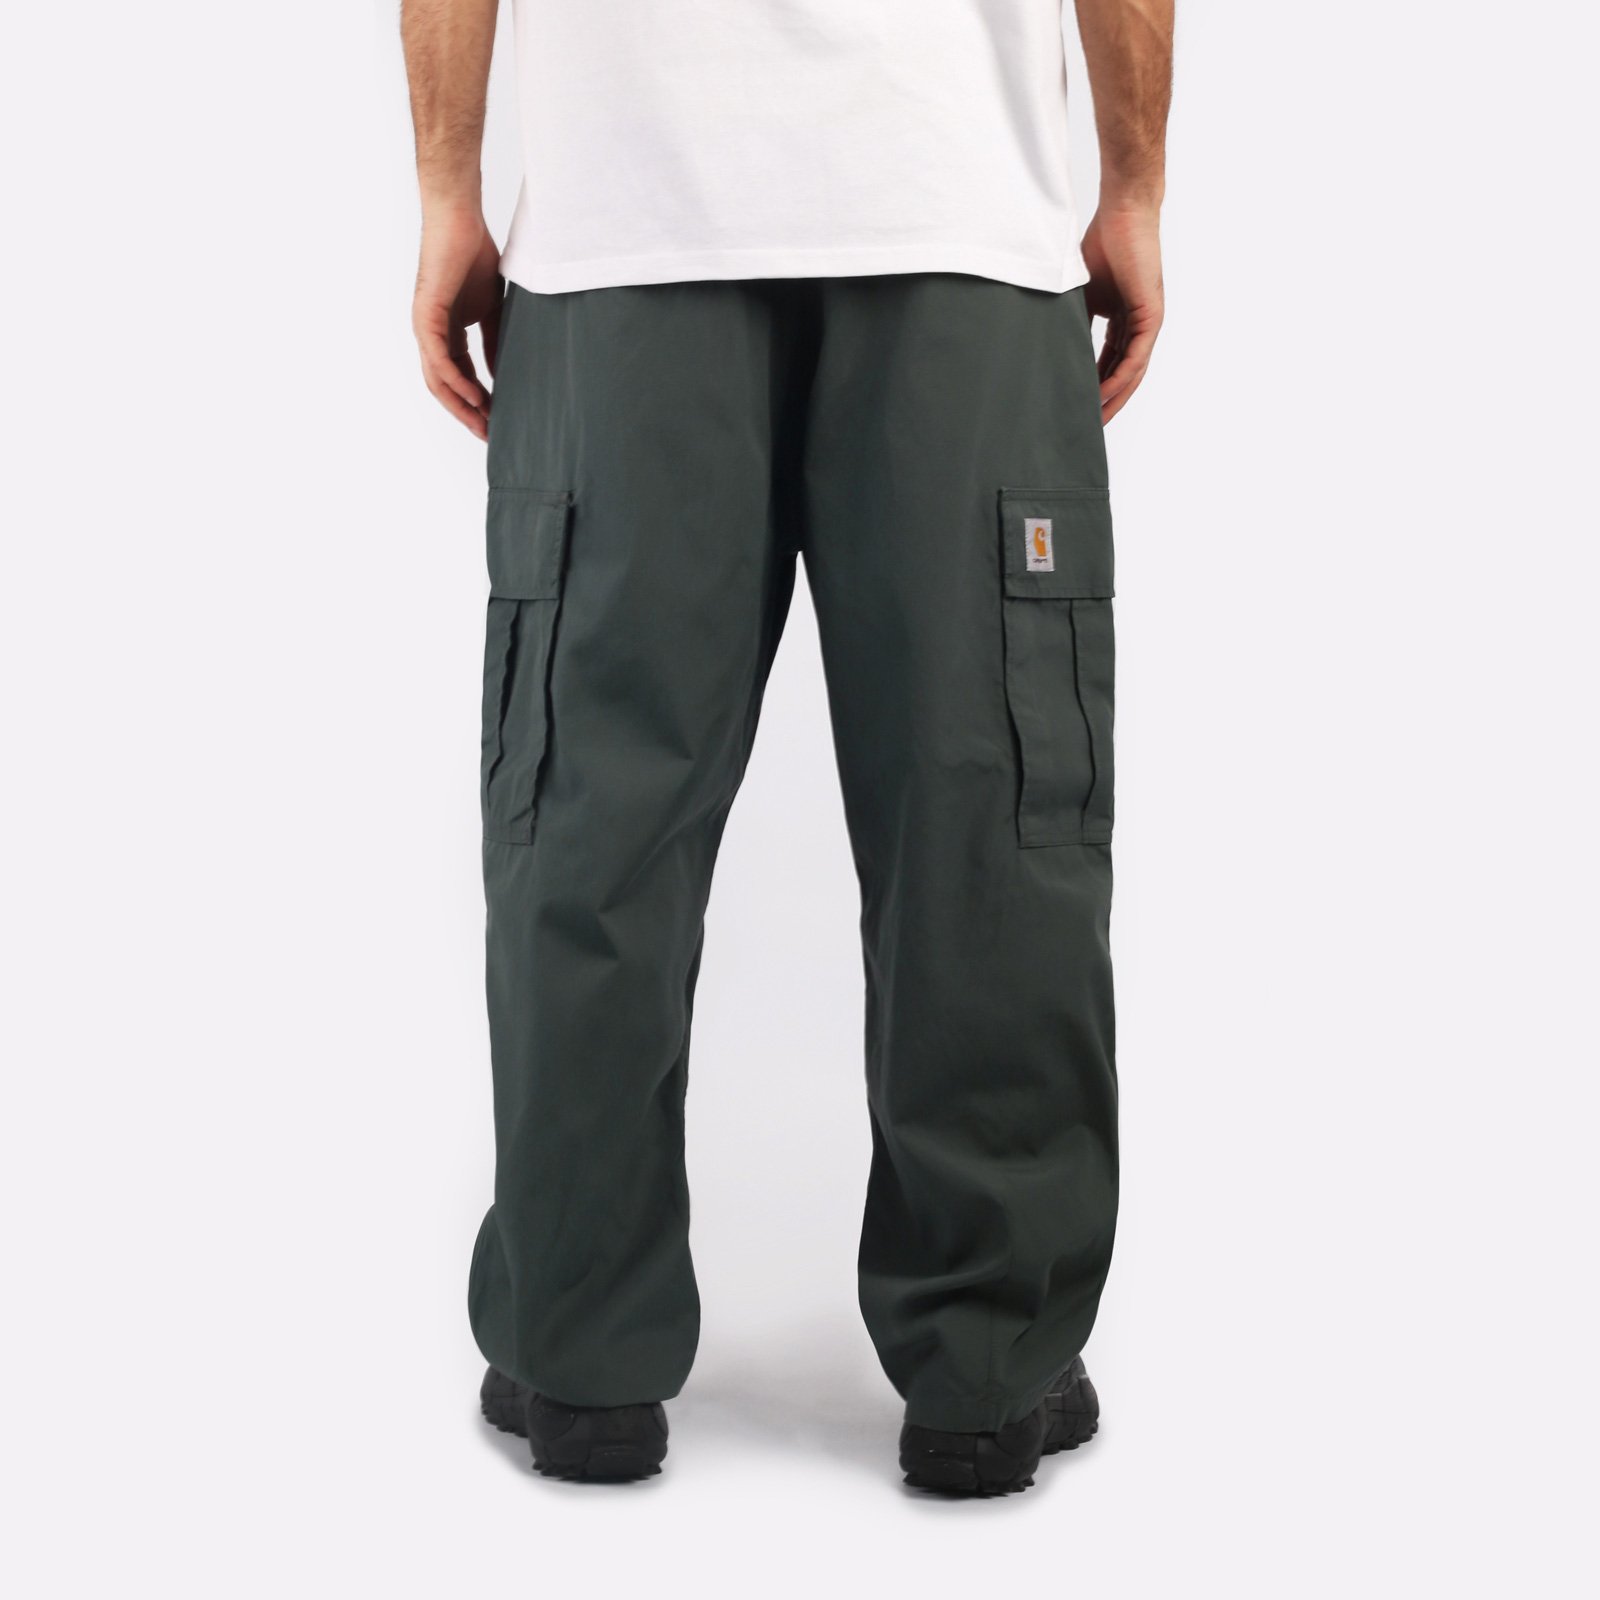 мужские зеленые брюки Carhartt WIP Cole Cargo Pant I030477-jura - цена, описание, фото 2